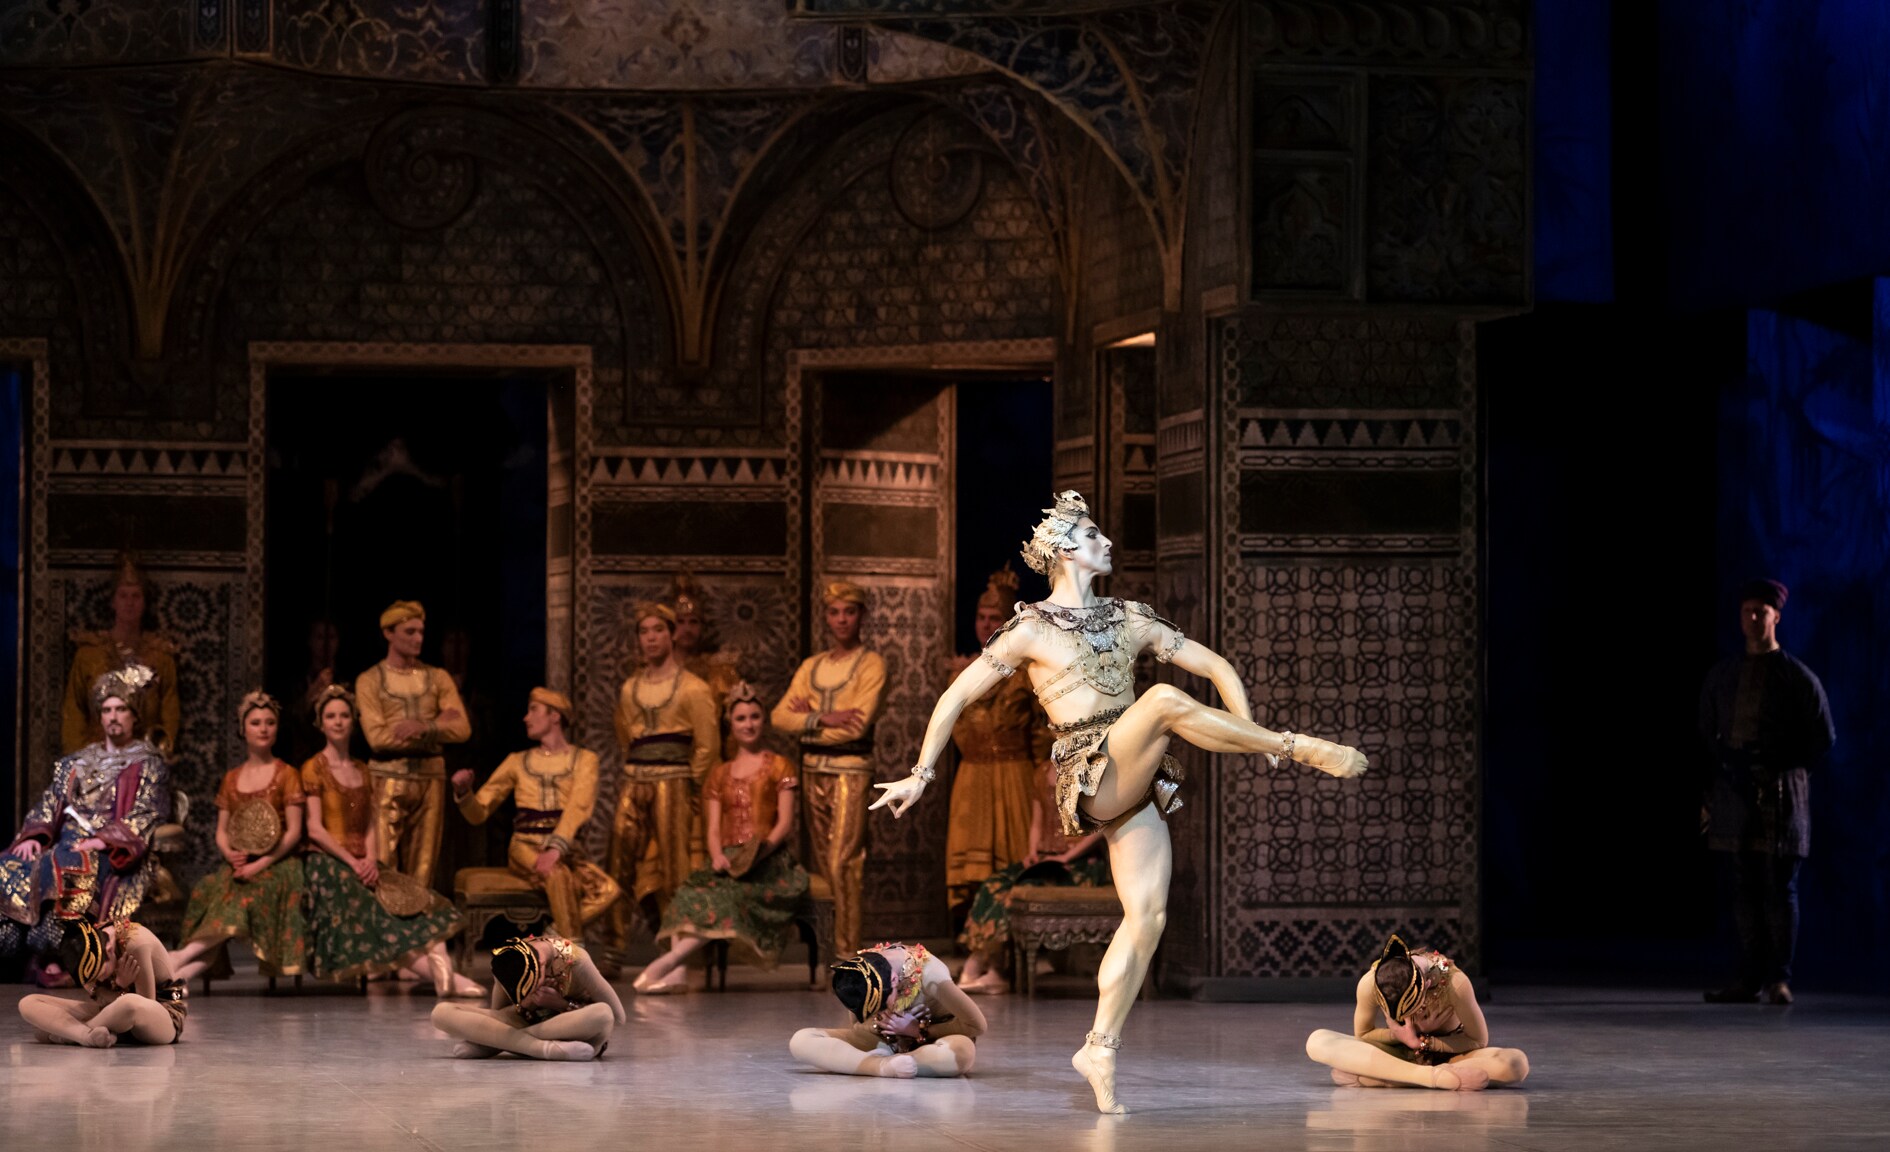 Marc Moreau dans le rôle de l'Idole dorée, entouré des interprètes de la Danse des enfants, acte II de La Bayadère, production de Rudolf Noureev, dans la mise en scène du Ballet de l'Opéra de Paris